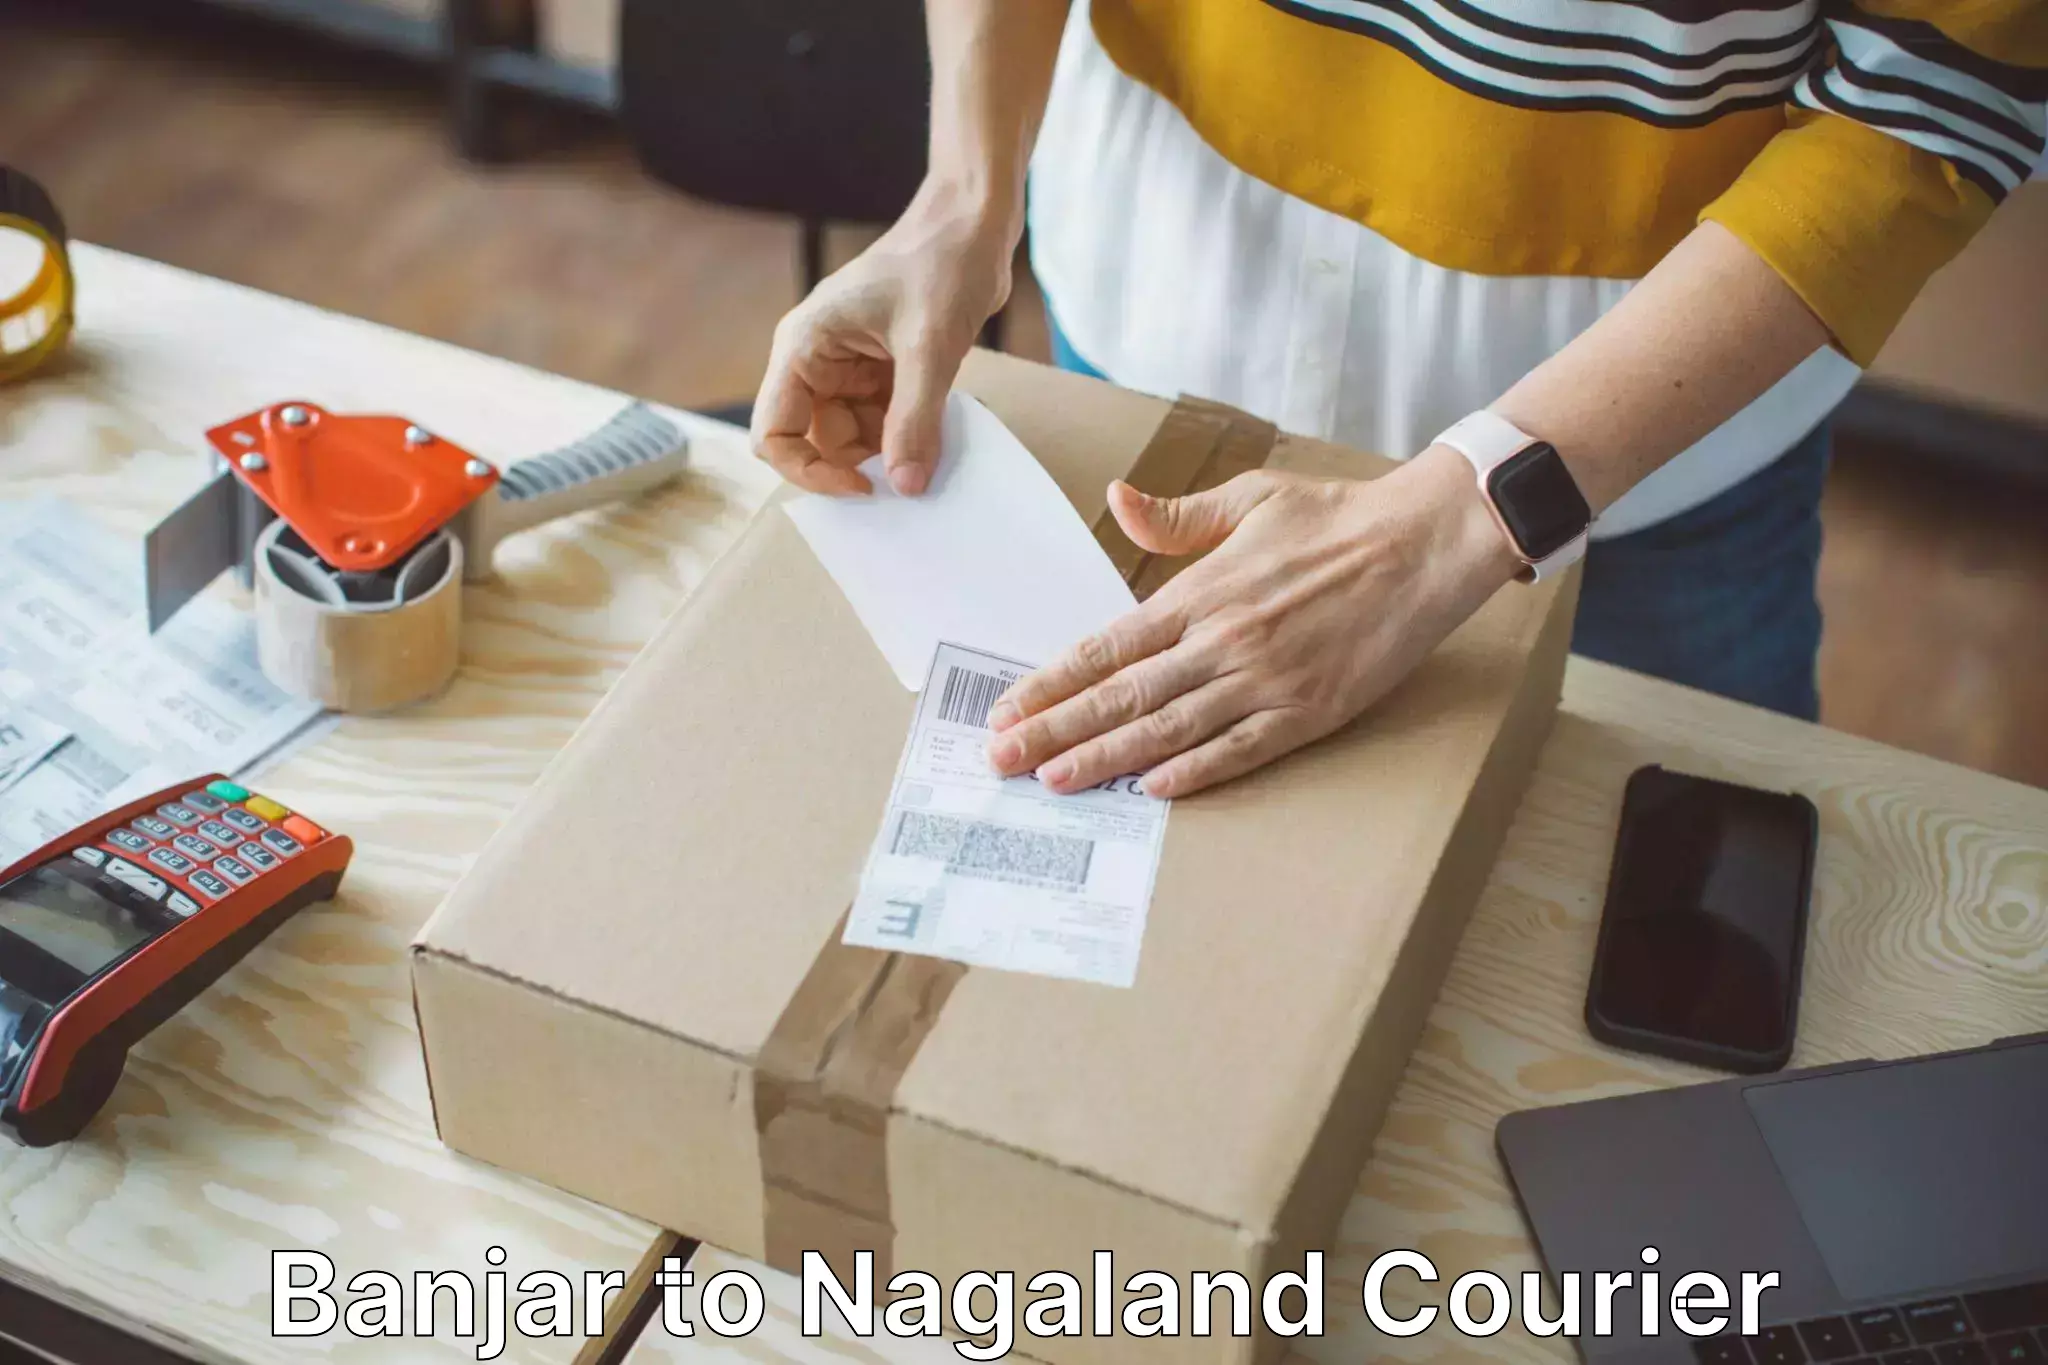 Baggage delivery optimization Banjar to Nagaland